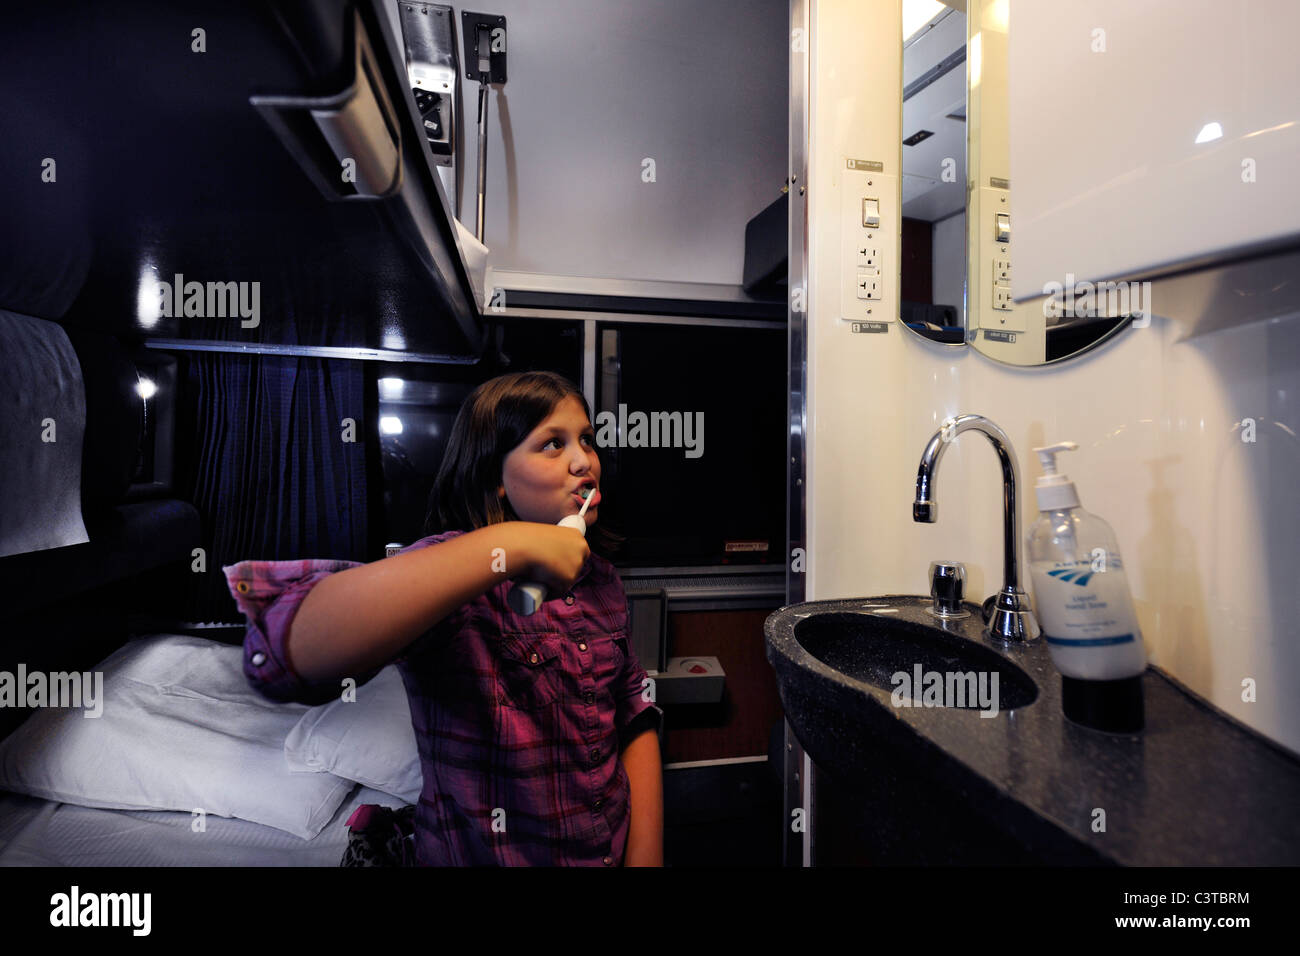 2010. 10 Jahre alten Mädchen Bürsten ihre Zähne vor dem Bett in ihrem Amtrak-Schlafwagen für die Reise von Chicago nach Washington, DC. Stockfoto